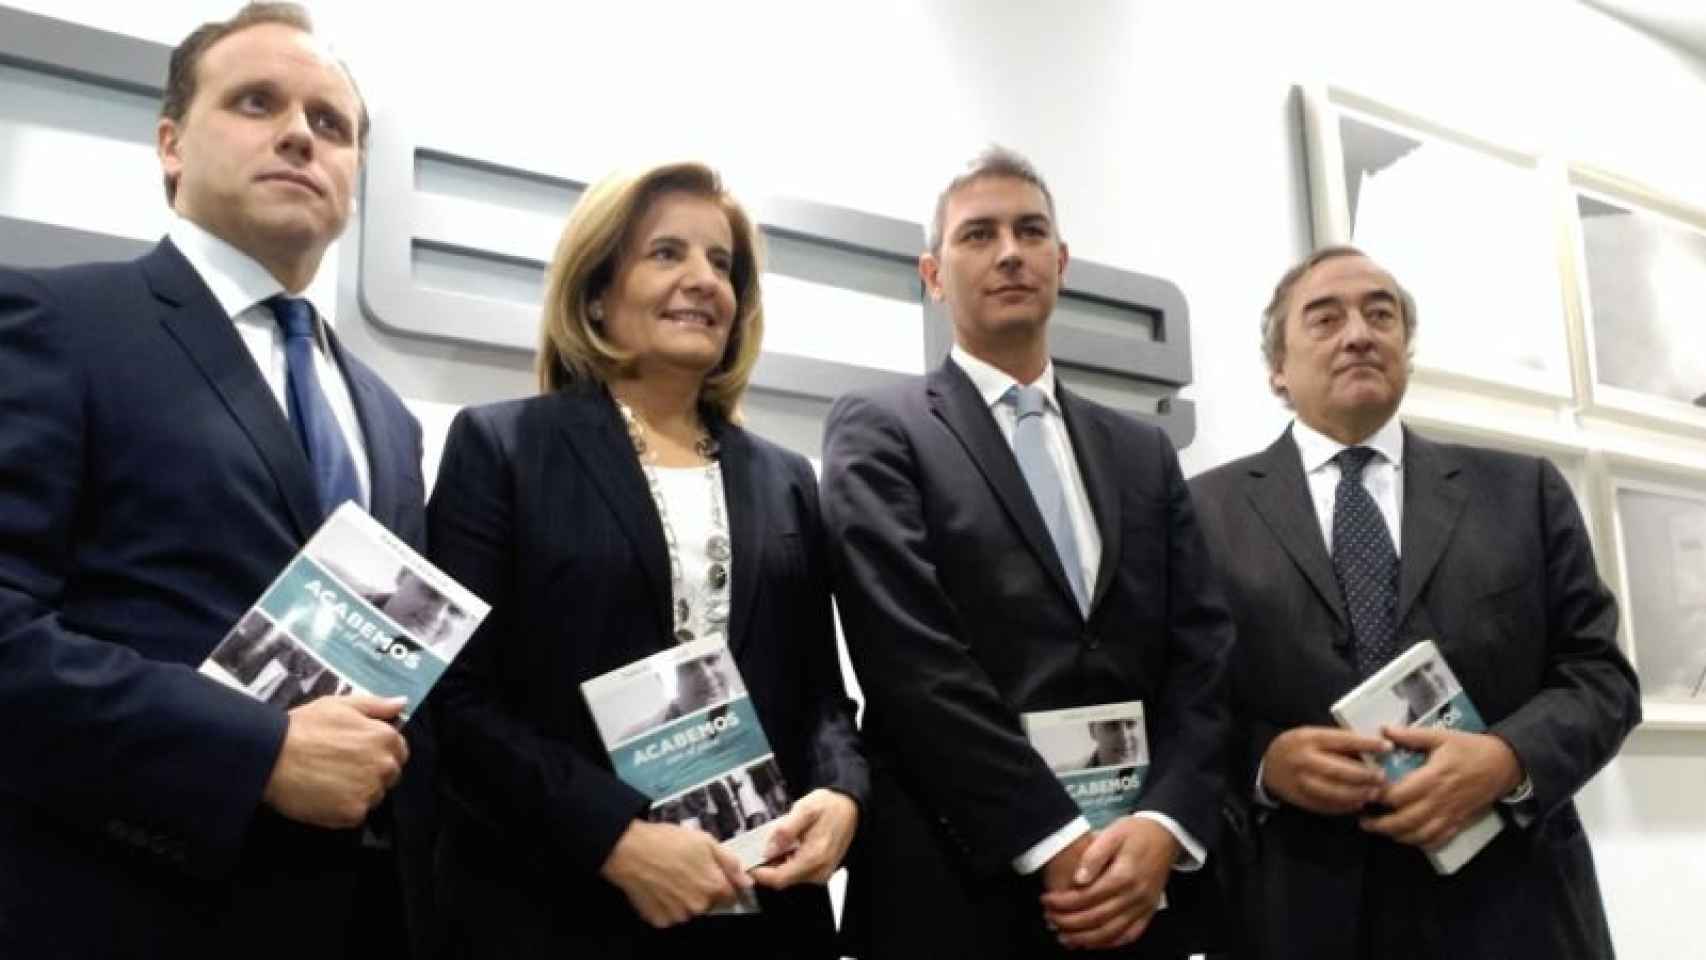 El economista Daniel Lacalle, junto a la ministra de Empleo y Seguridad Social, Fátima Báñez, y el presidente de la CEOE, Juan Rosell, en la presentación del libro del economista.